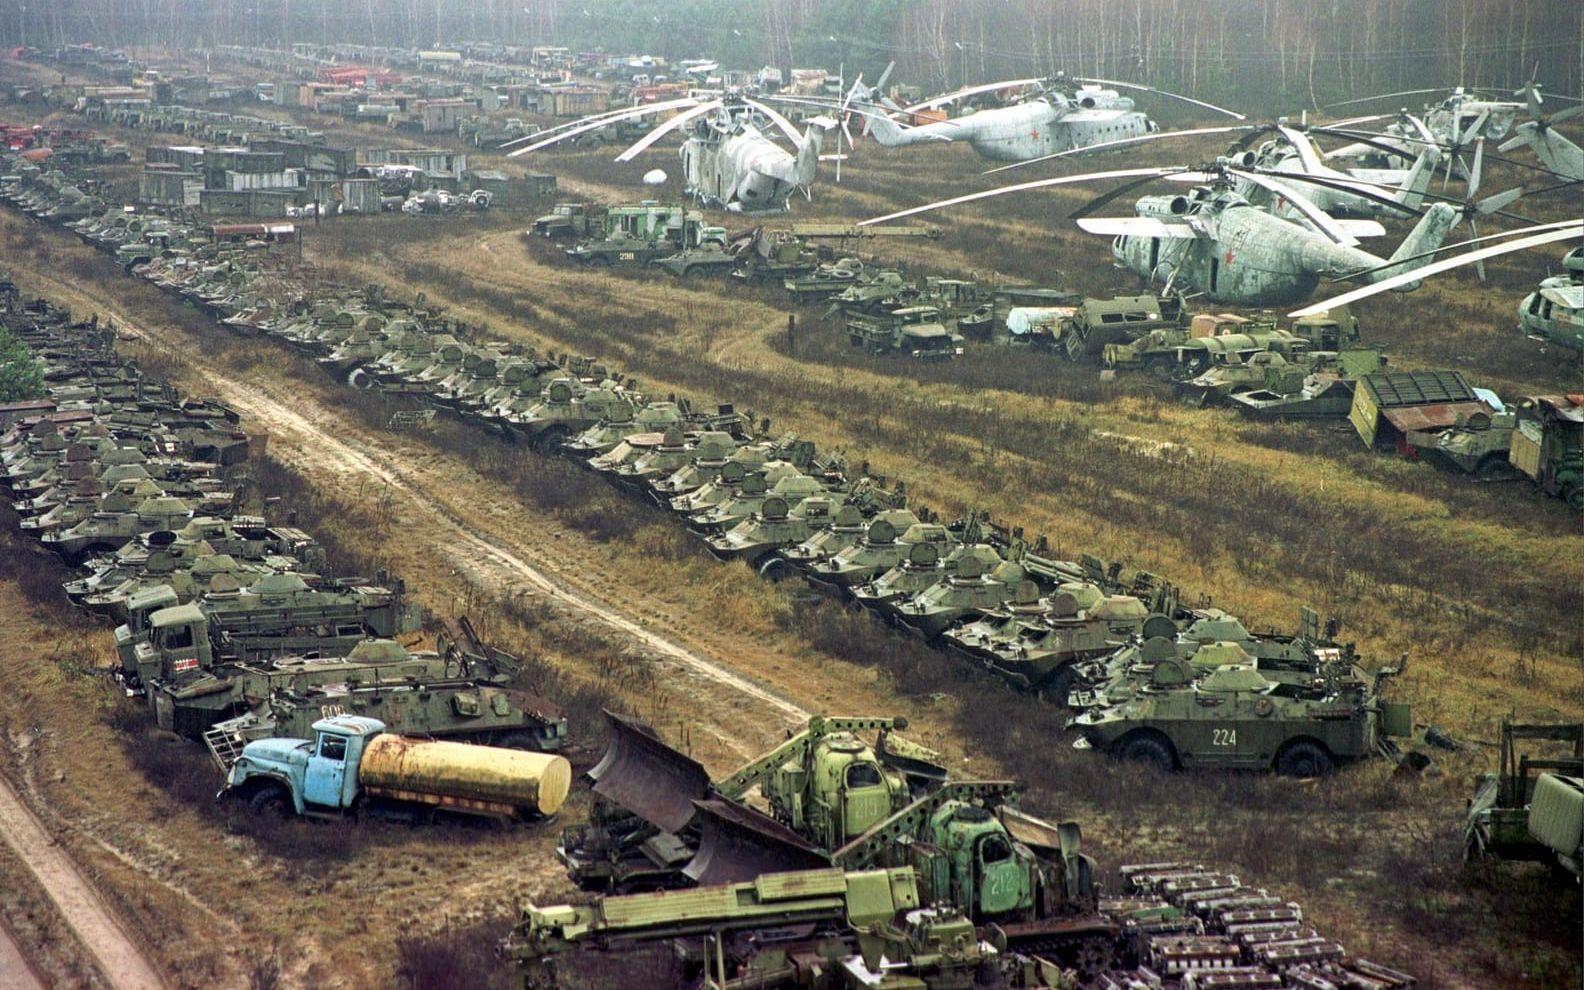 Drygt 1350 olika fordon, de allra flesta militära, användes under de första veckorna av släckningsarbetet 1986.